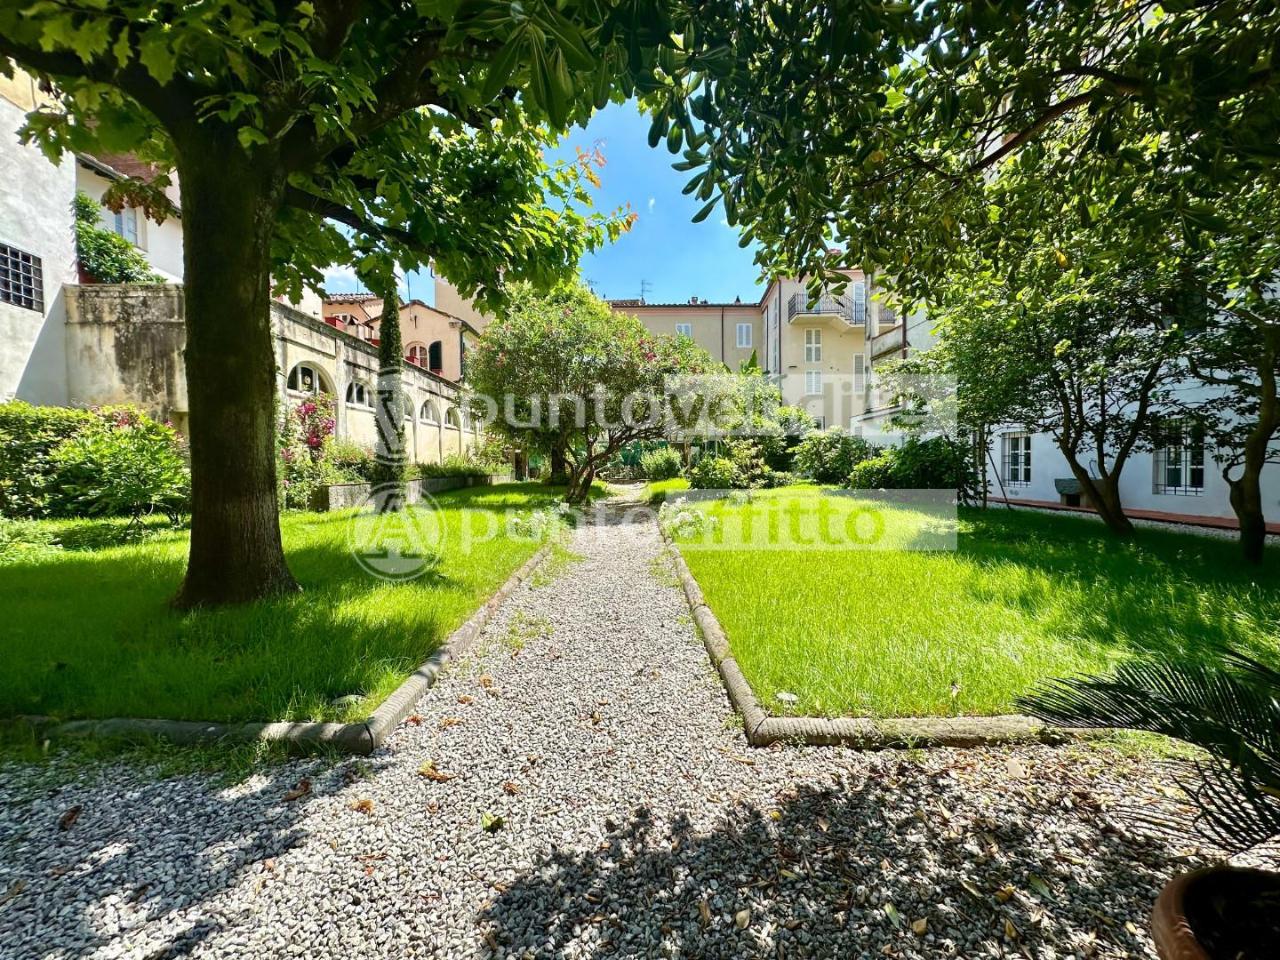 Appartamento in affitto a Lucca